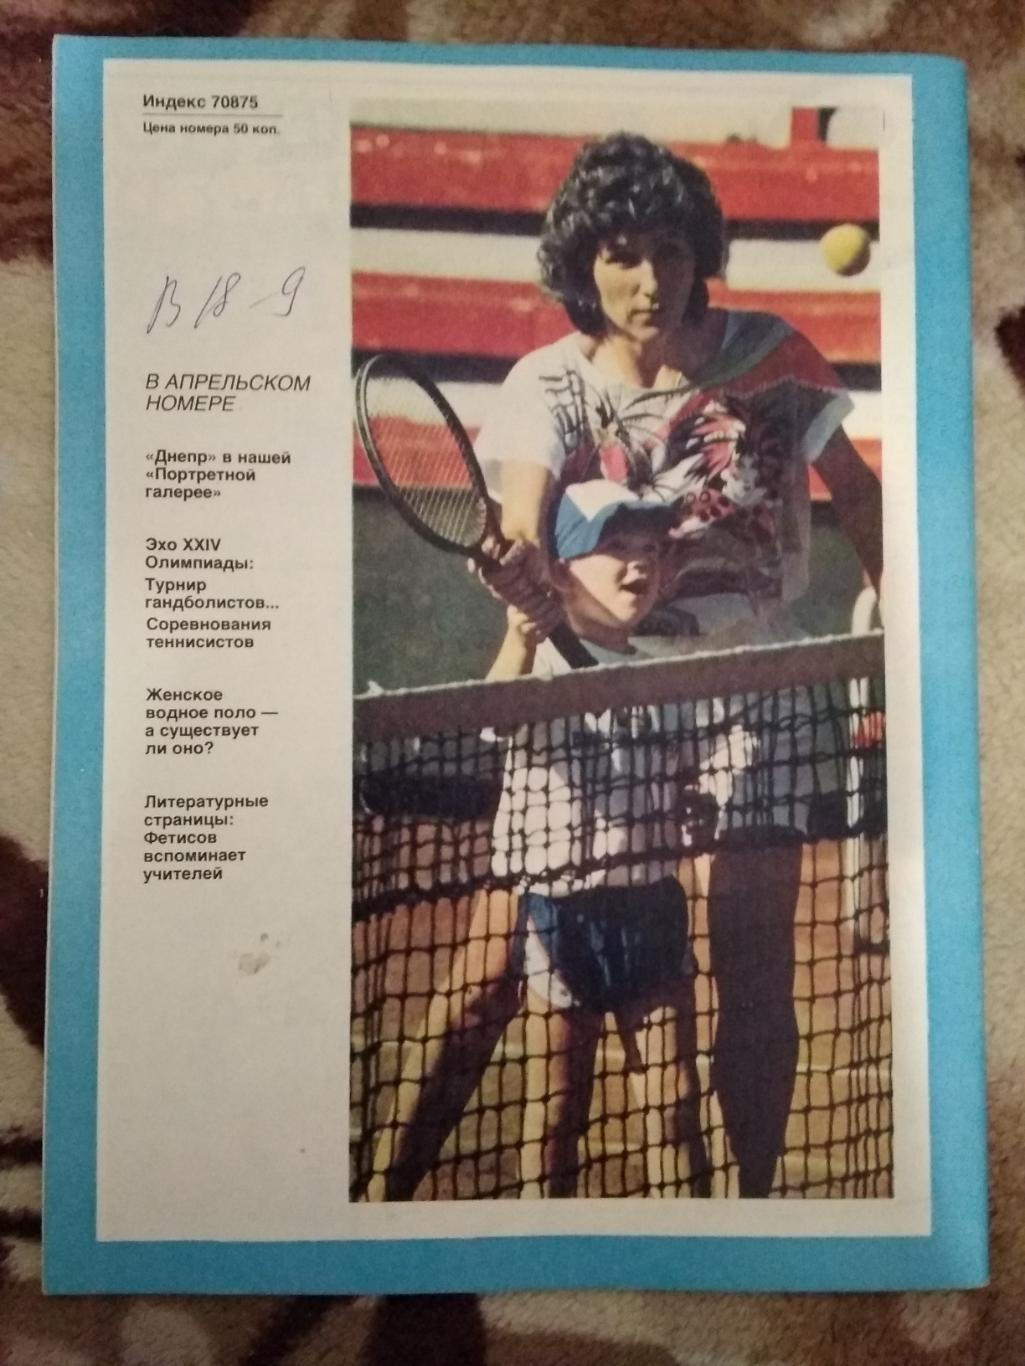 Журнал.Спортивные игры № 3 1989 г. 1